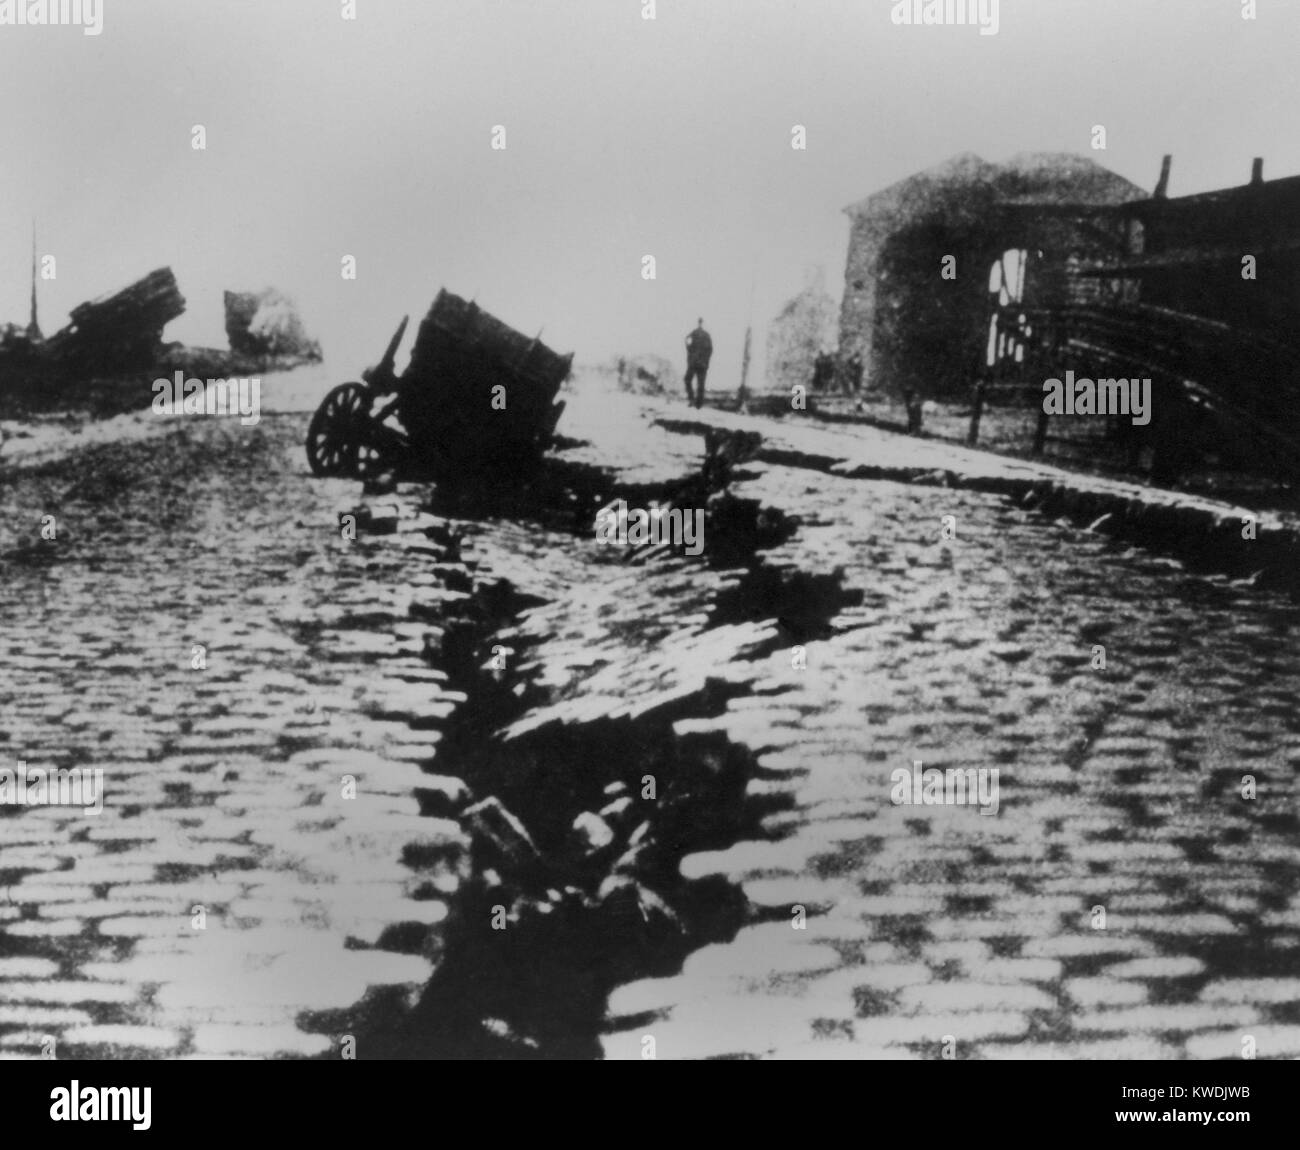 Fisura y hundirse en East Street cerca del Edificio Ferry tras el terremoto de San Francisco de 1906. Un carro cayó en grietas en la carretera cerca de la costa causada por extensión lateral en la zona (BSLOC 2017 17 8) Foto de stock